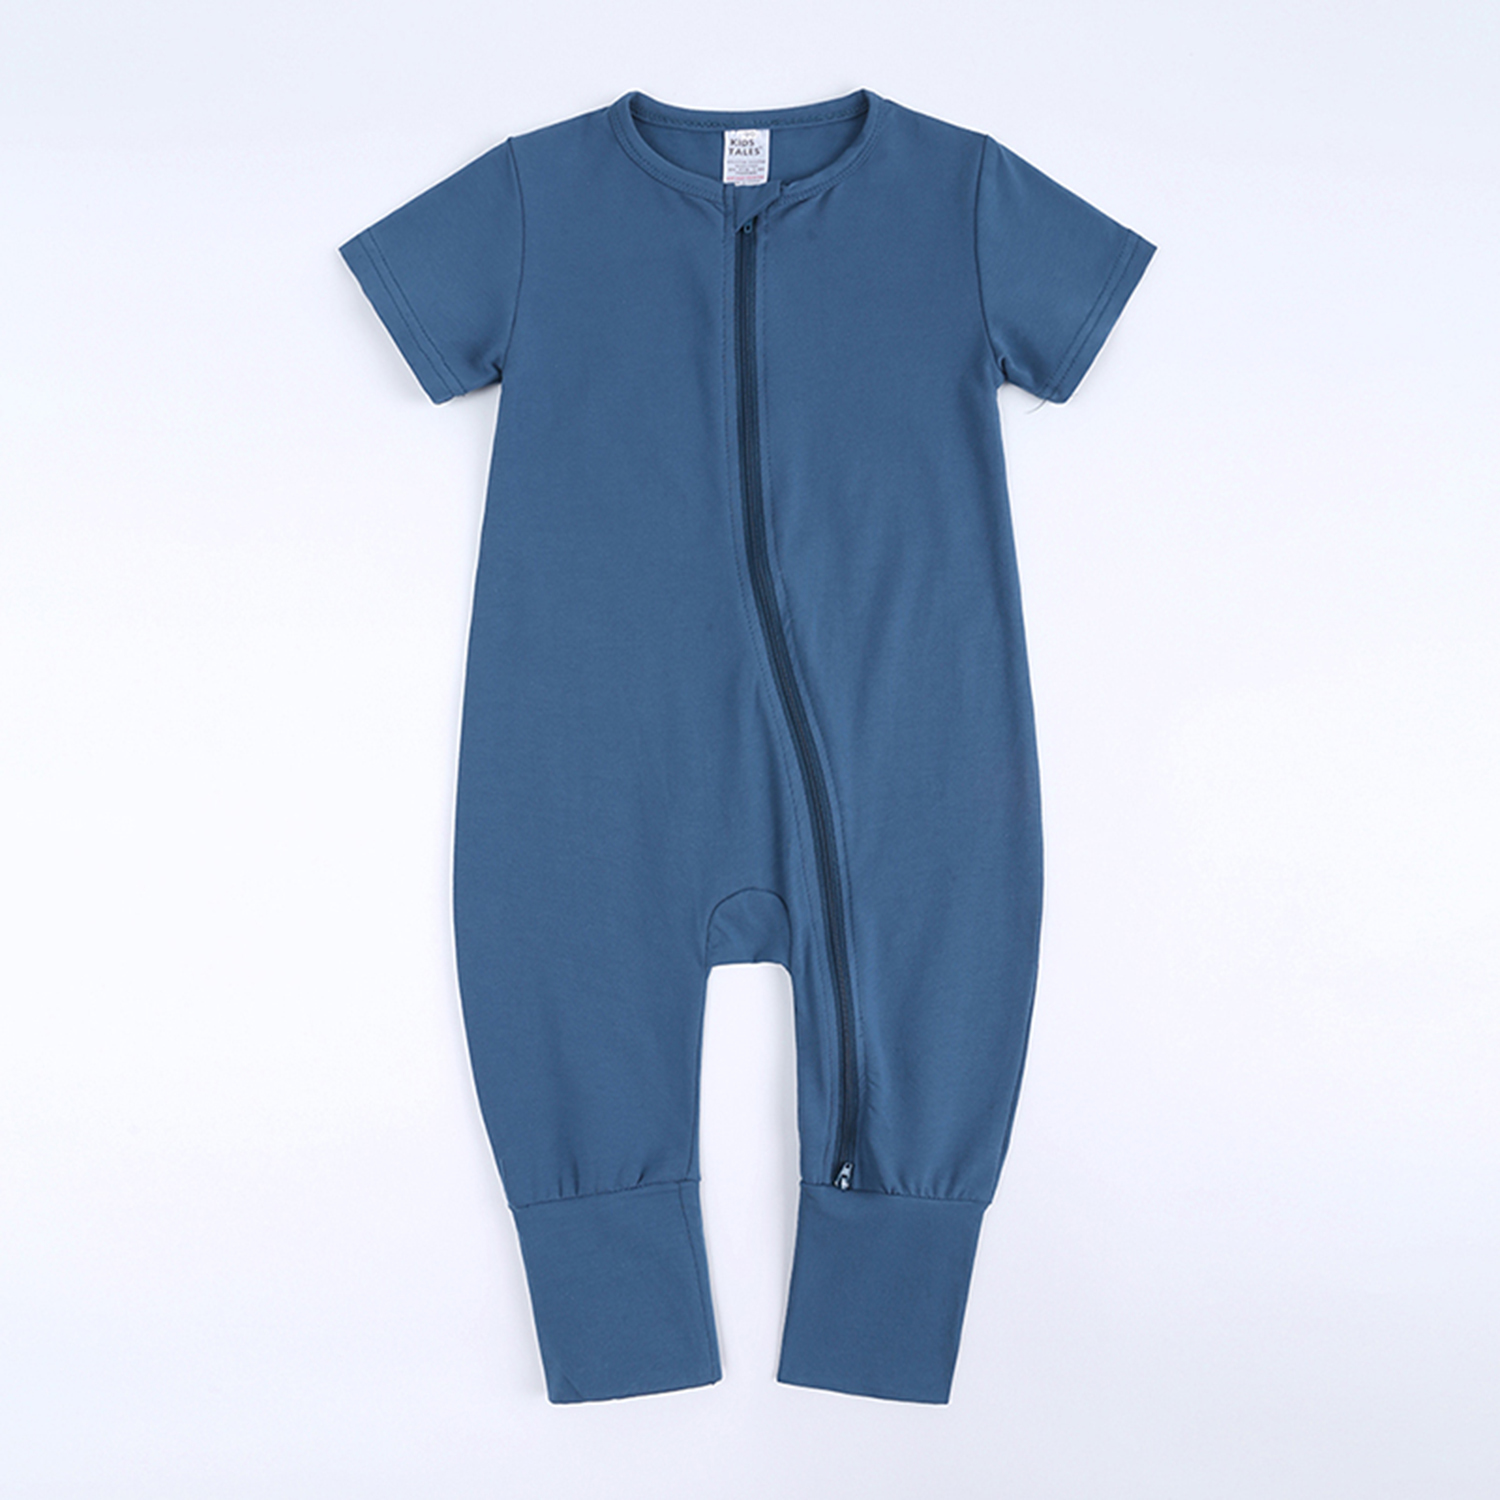 Kids Tales - Best baby romper blue 12-18 mo cotton double zipper infant bodysuit sleeper boy